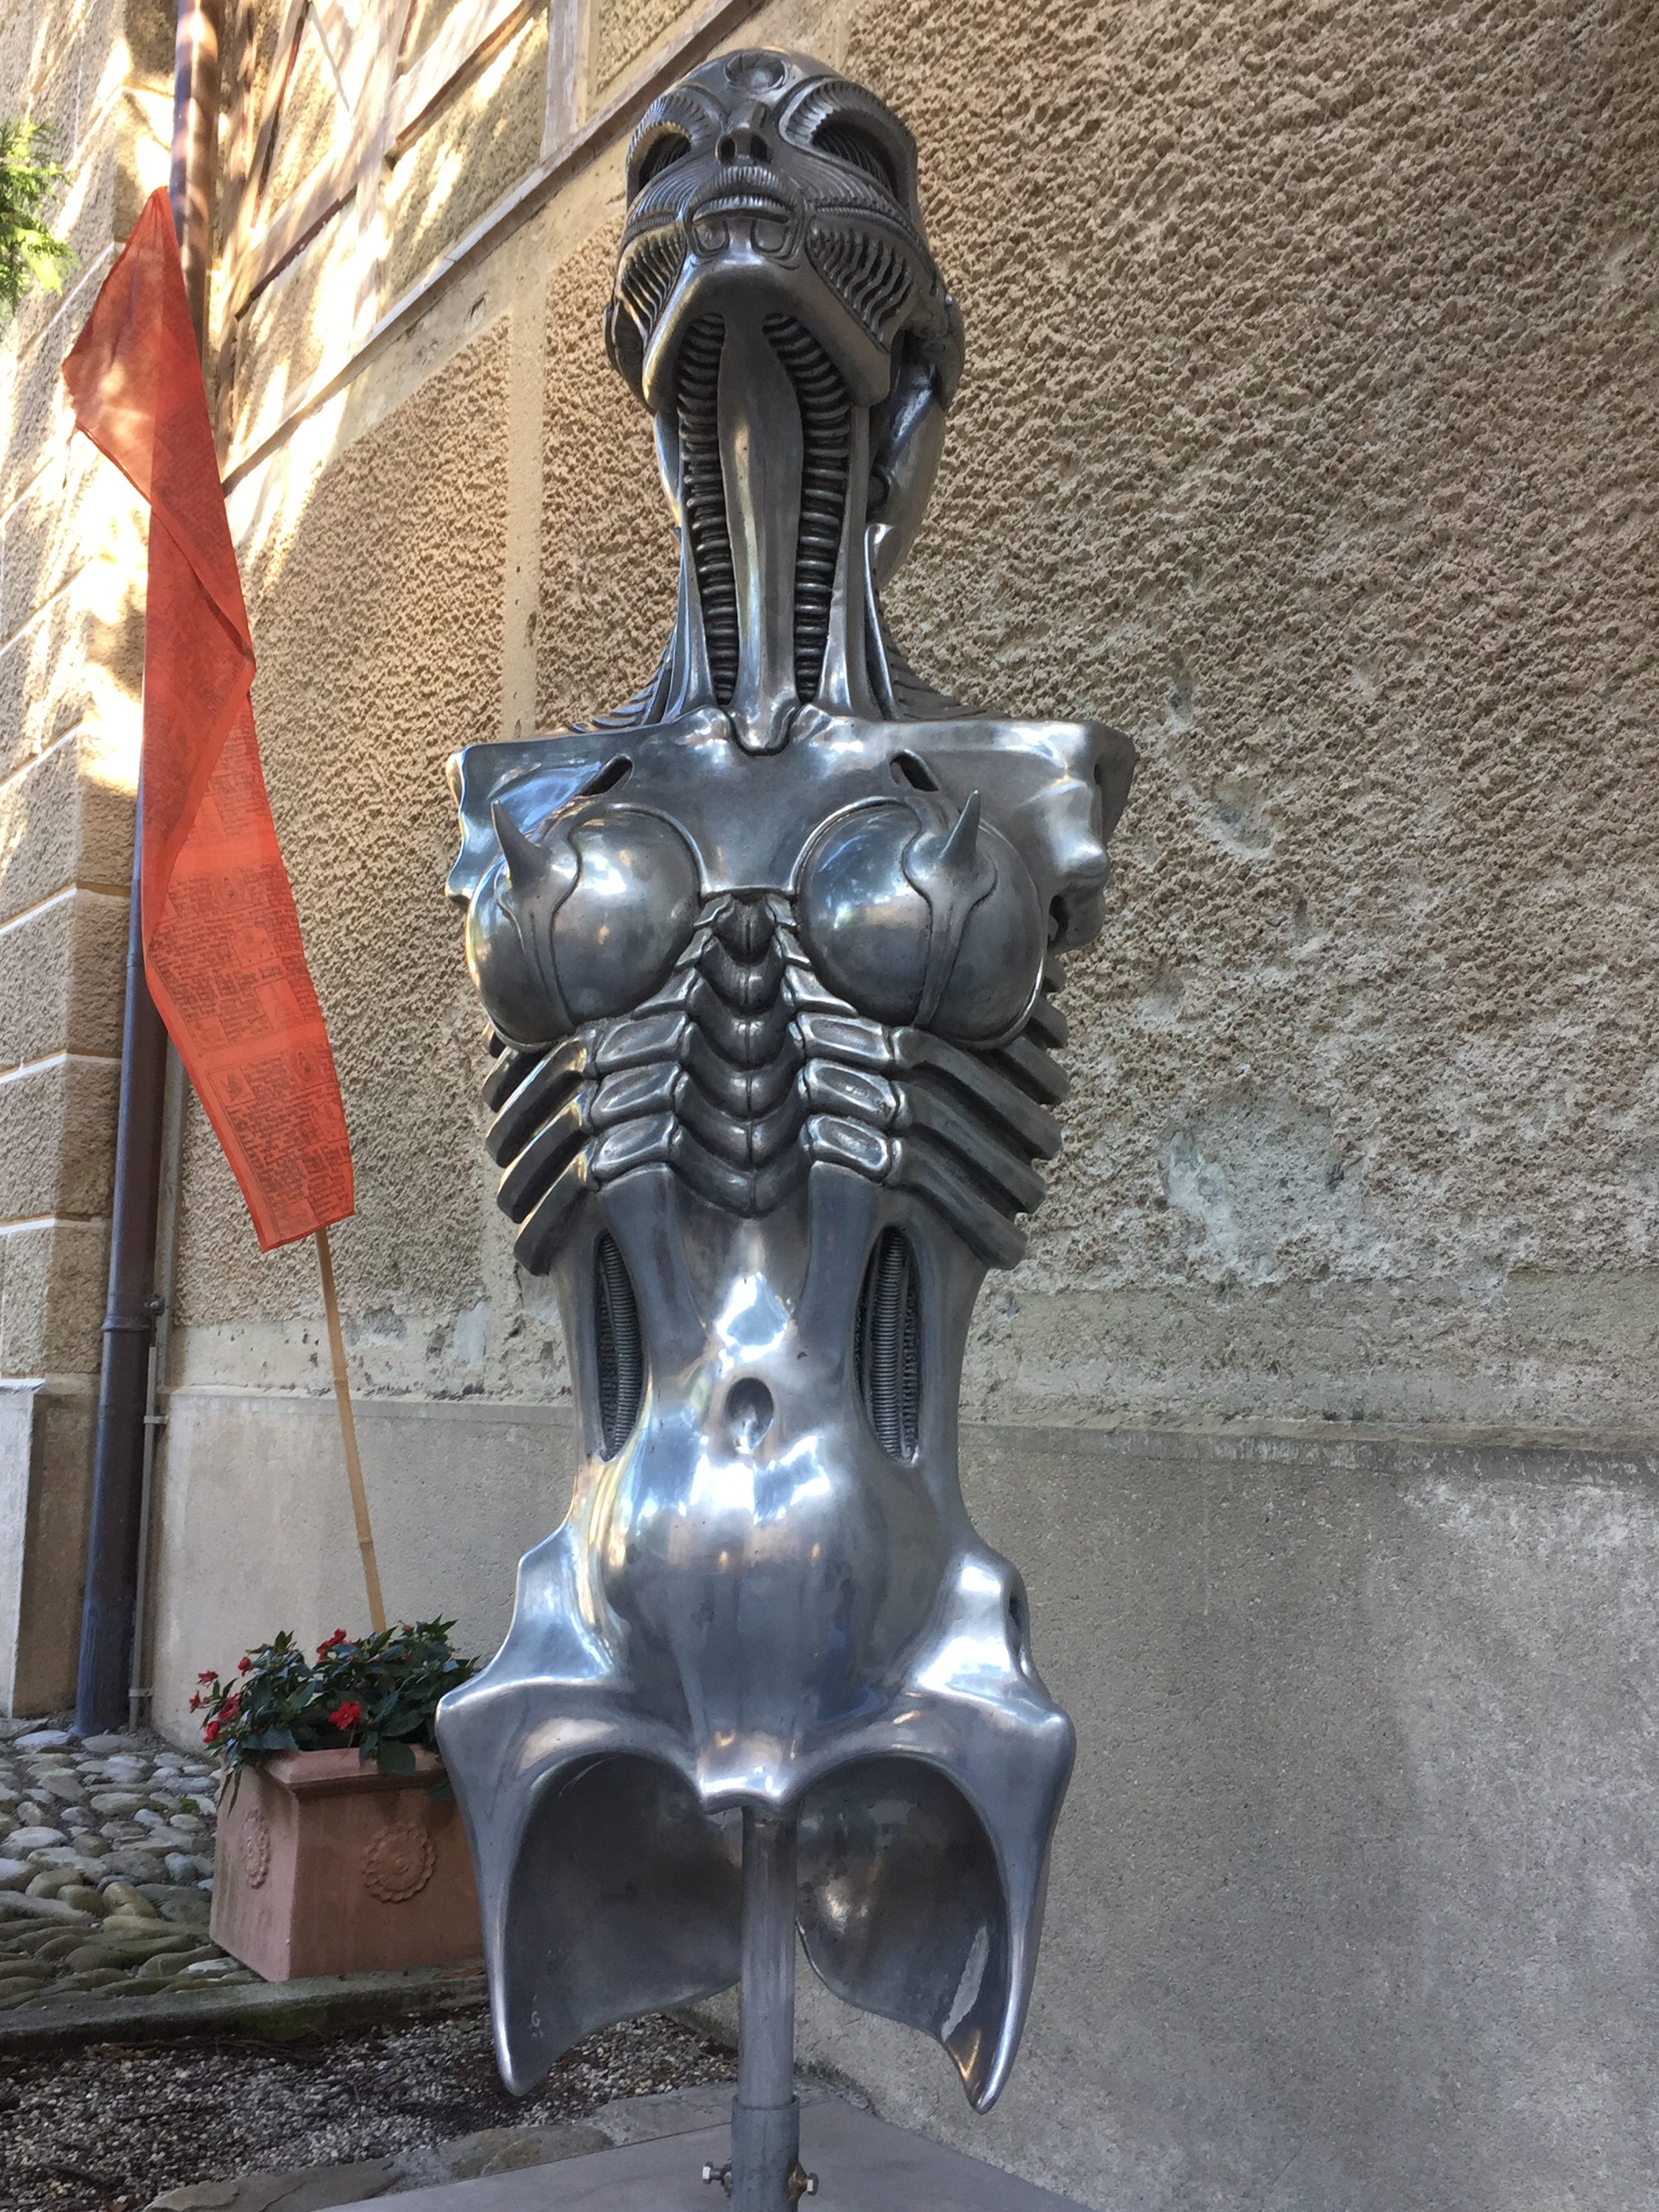 Alien statue